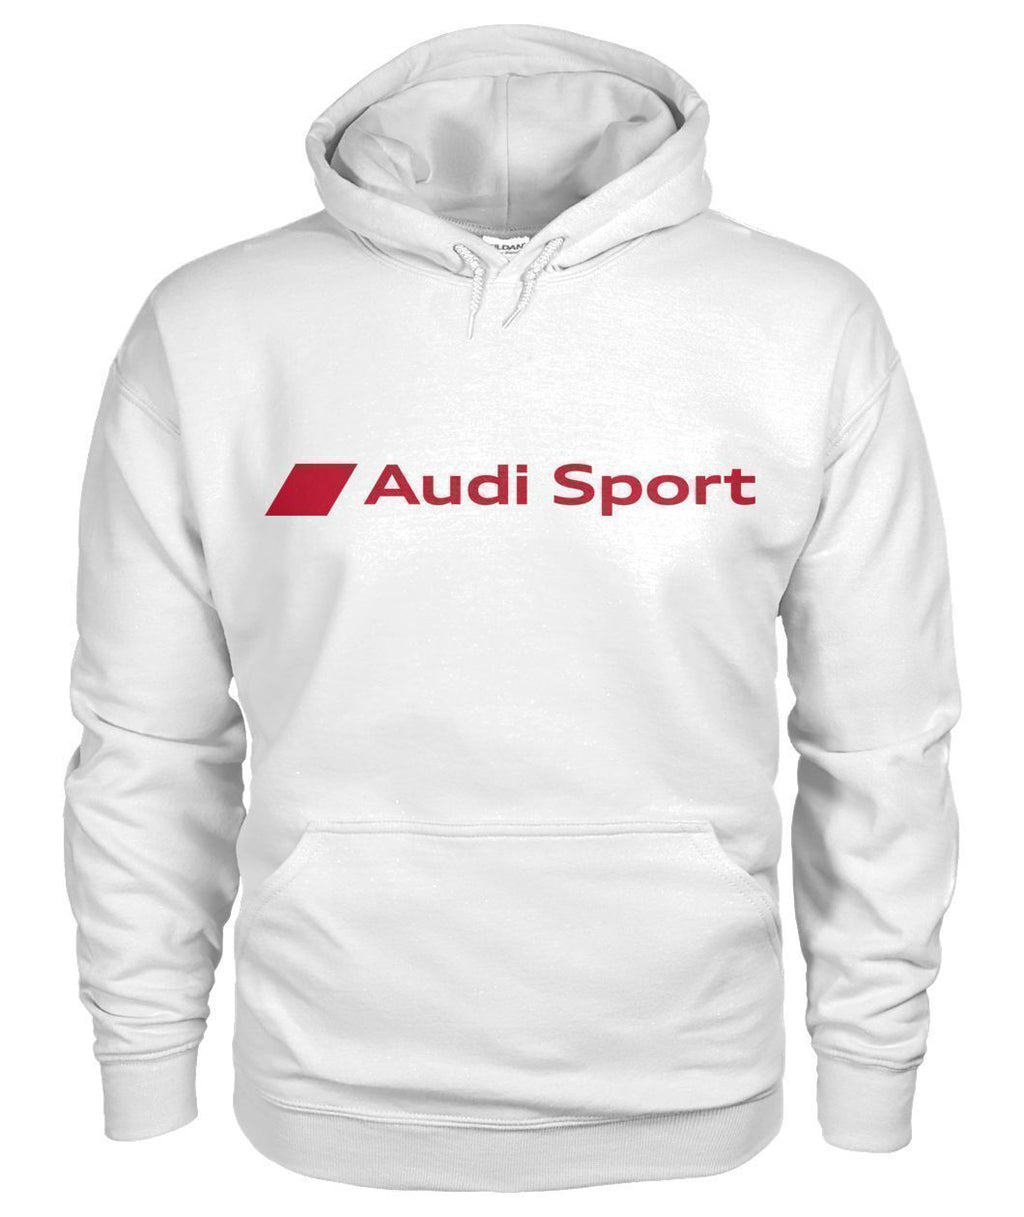 'Audi Sport' Hoodie - AudiLovers